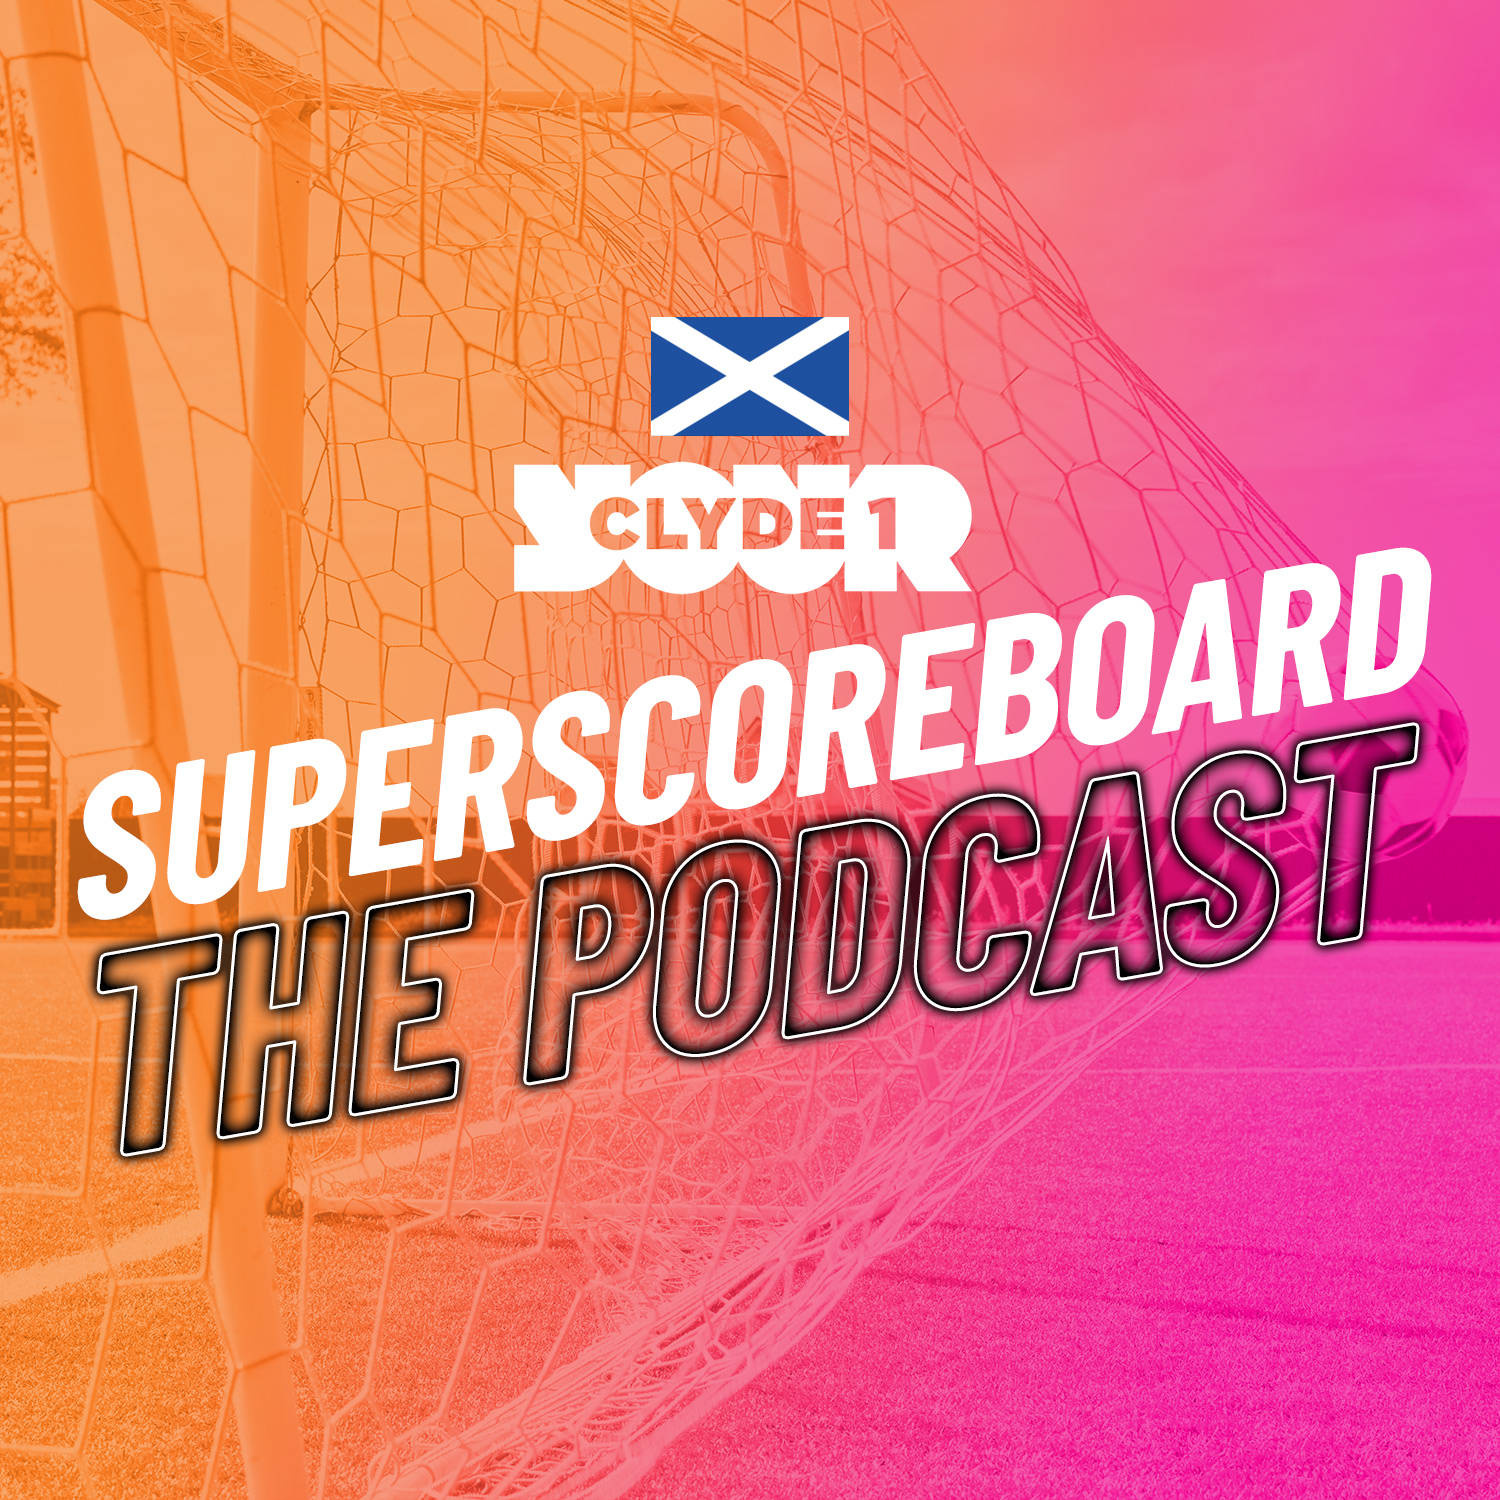 Tuesday 28th November Clyde 1 Superscoreboard